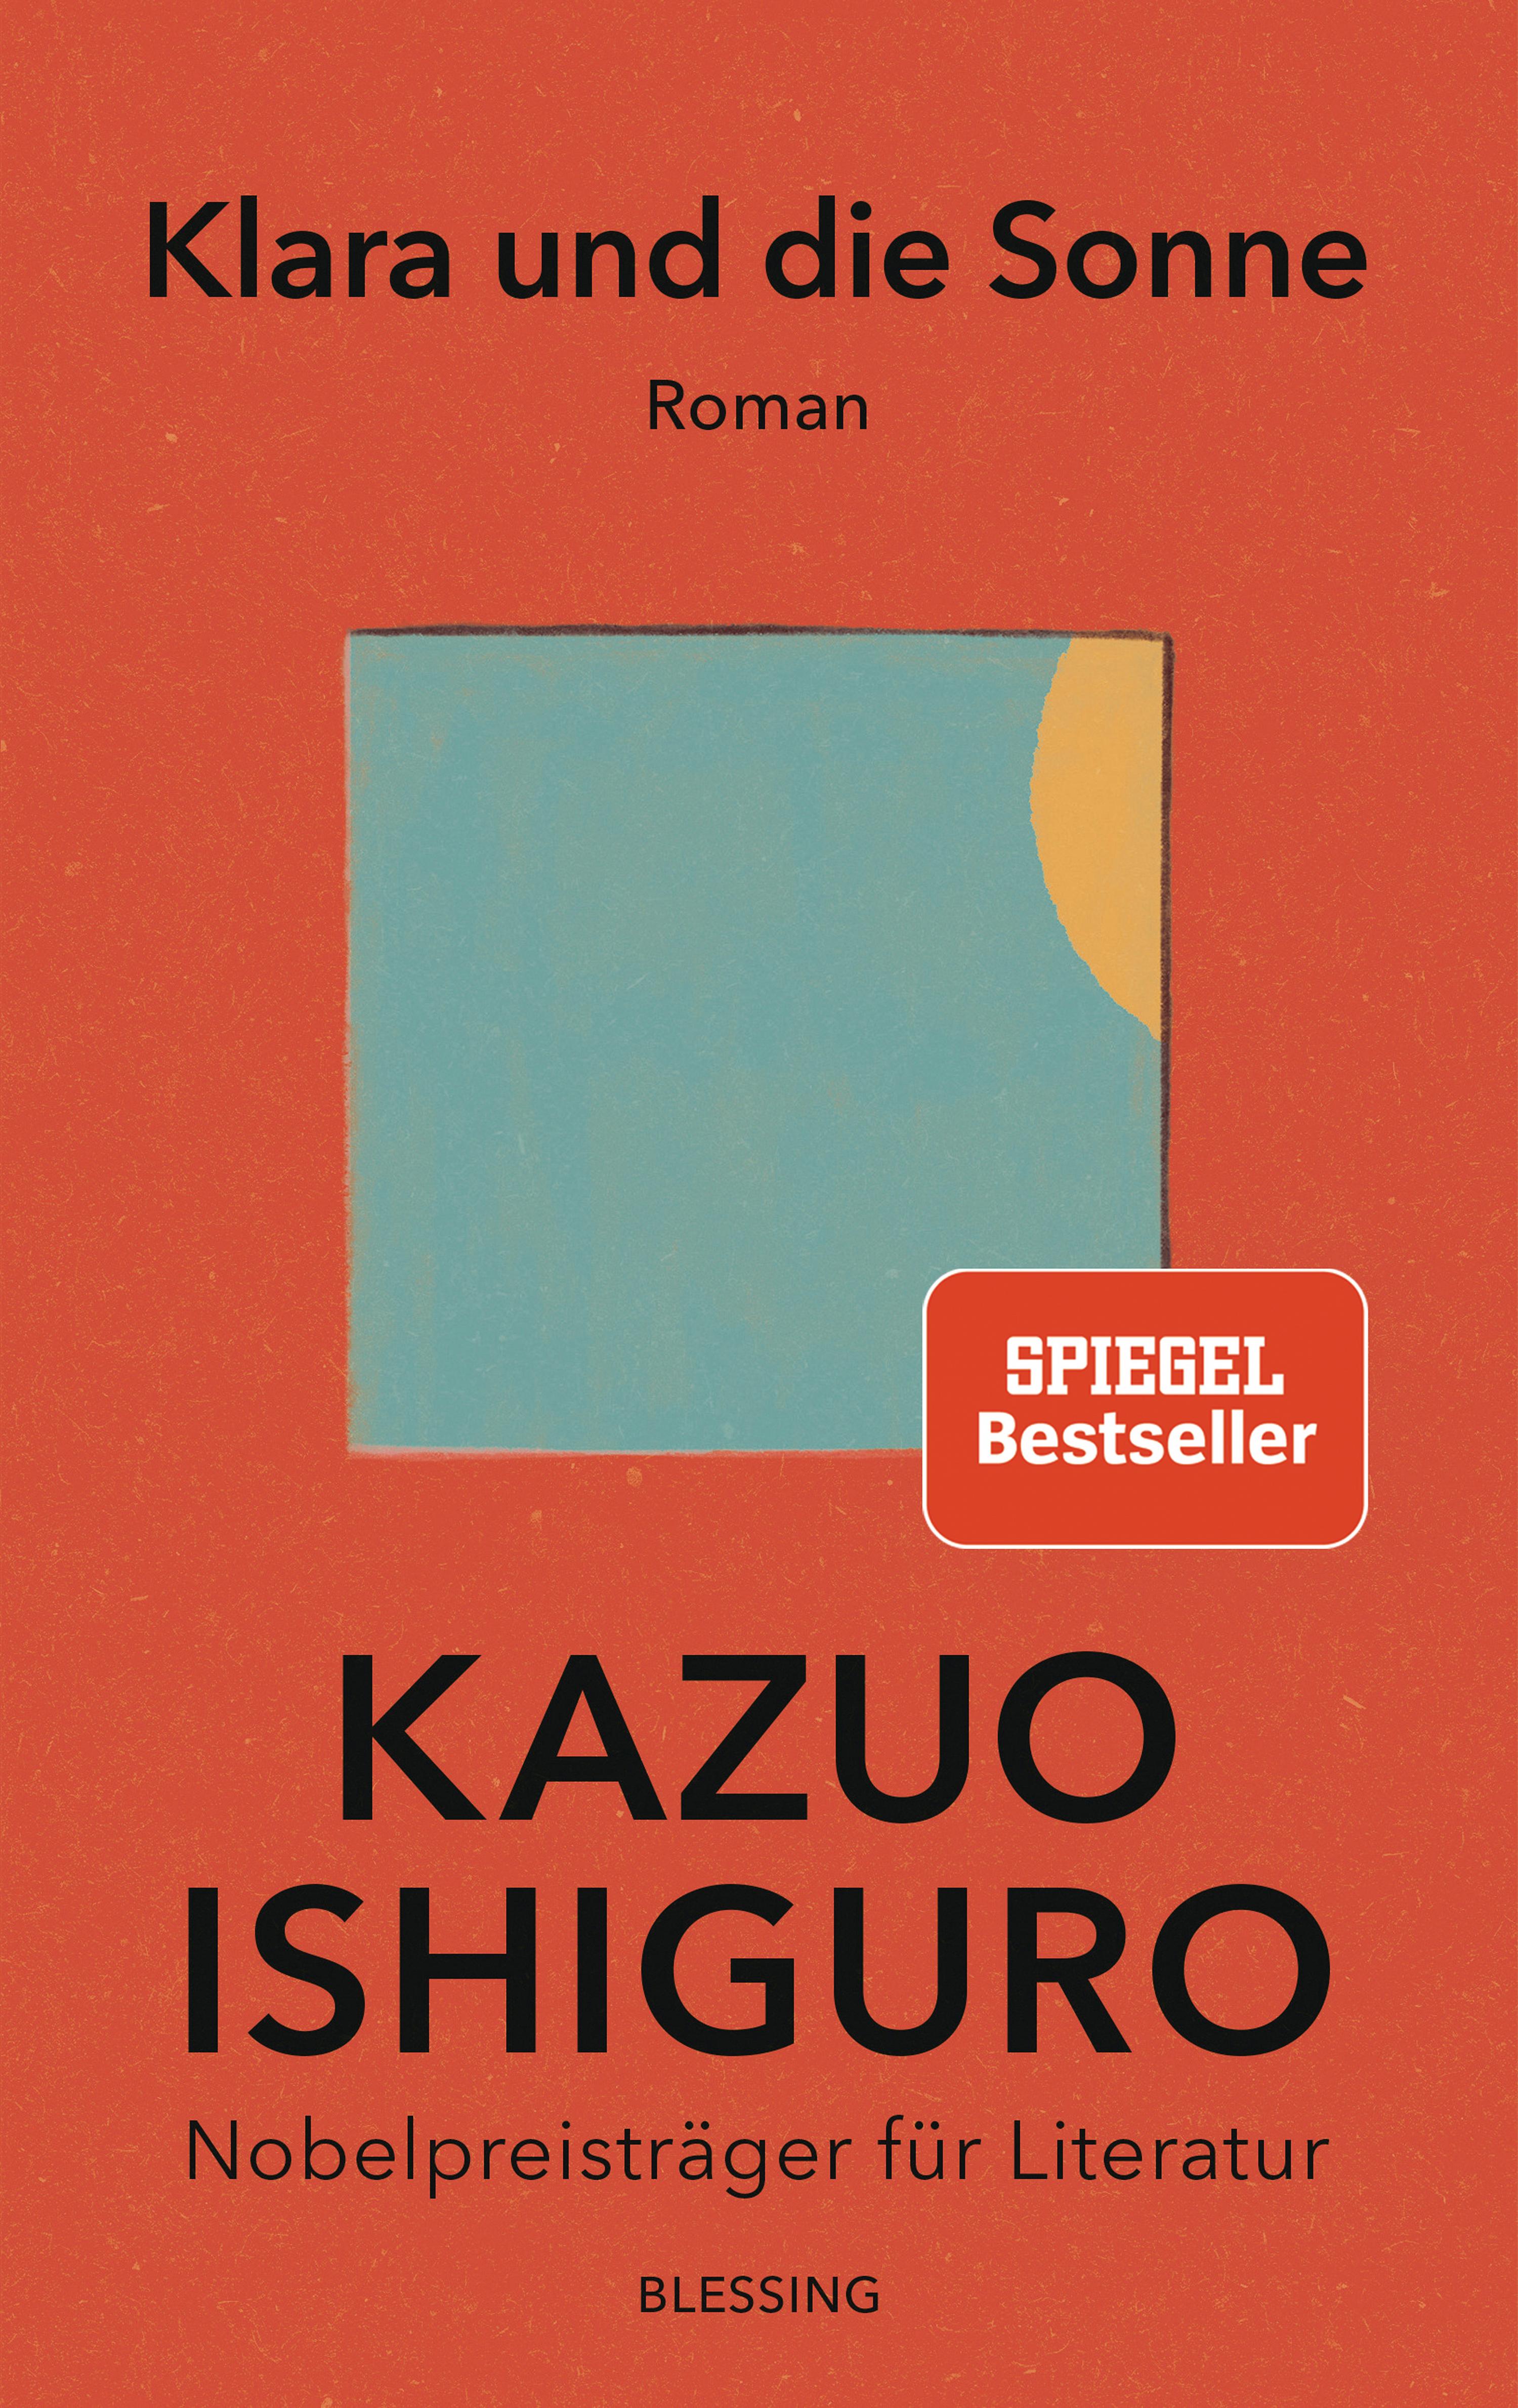 Ishiguro, Kazuo: Klara und die Sonne. München: Blessing Verlag 2021.